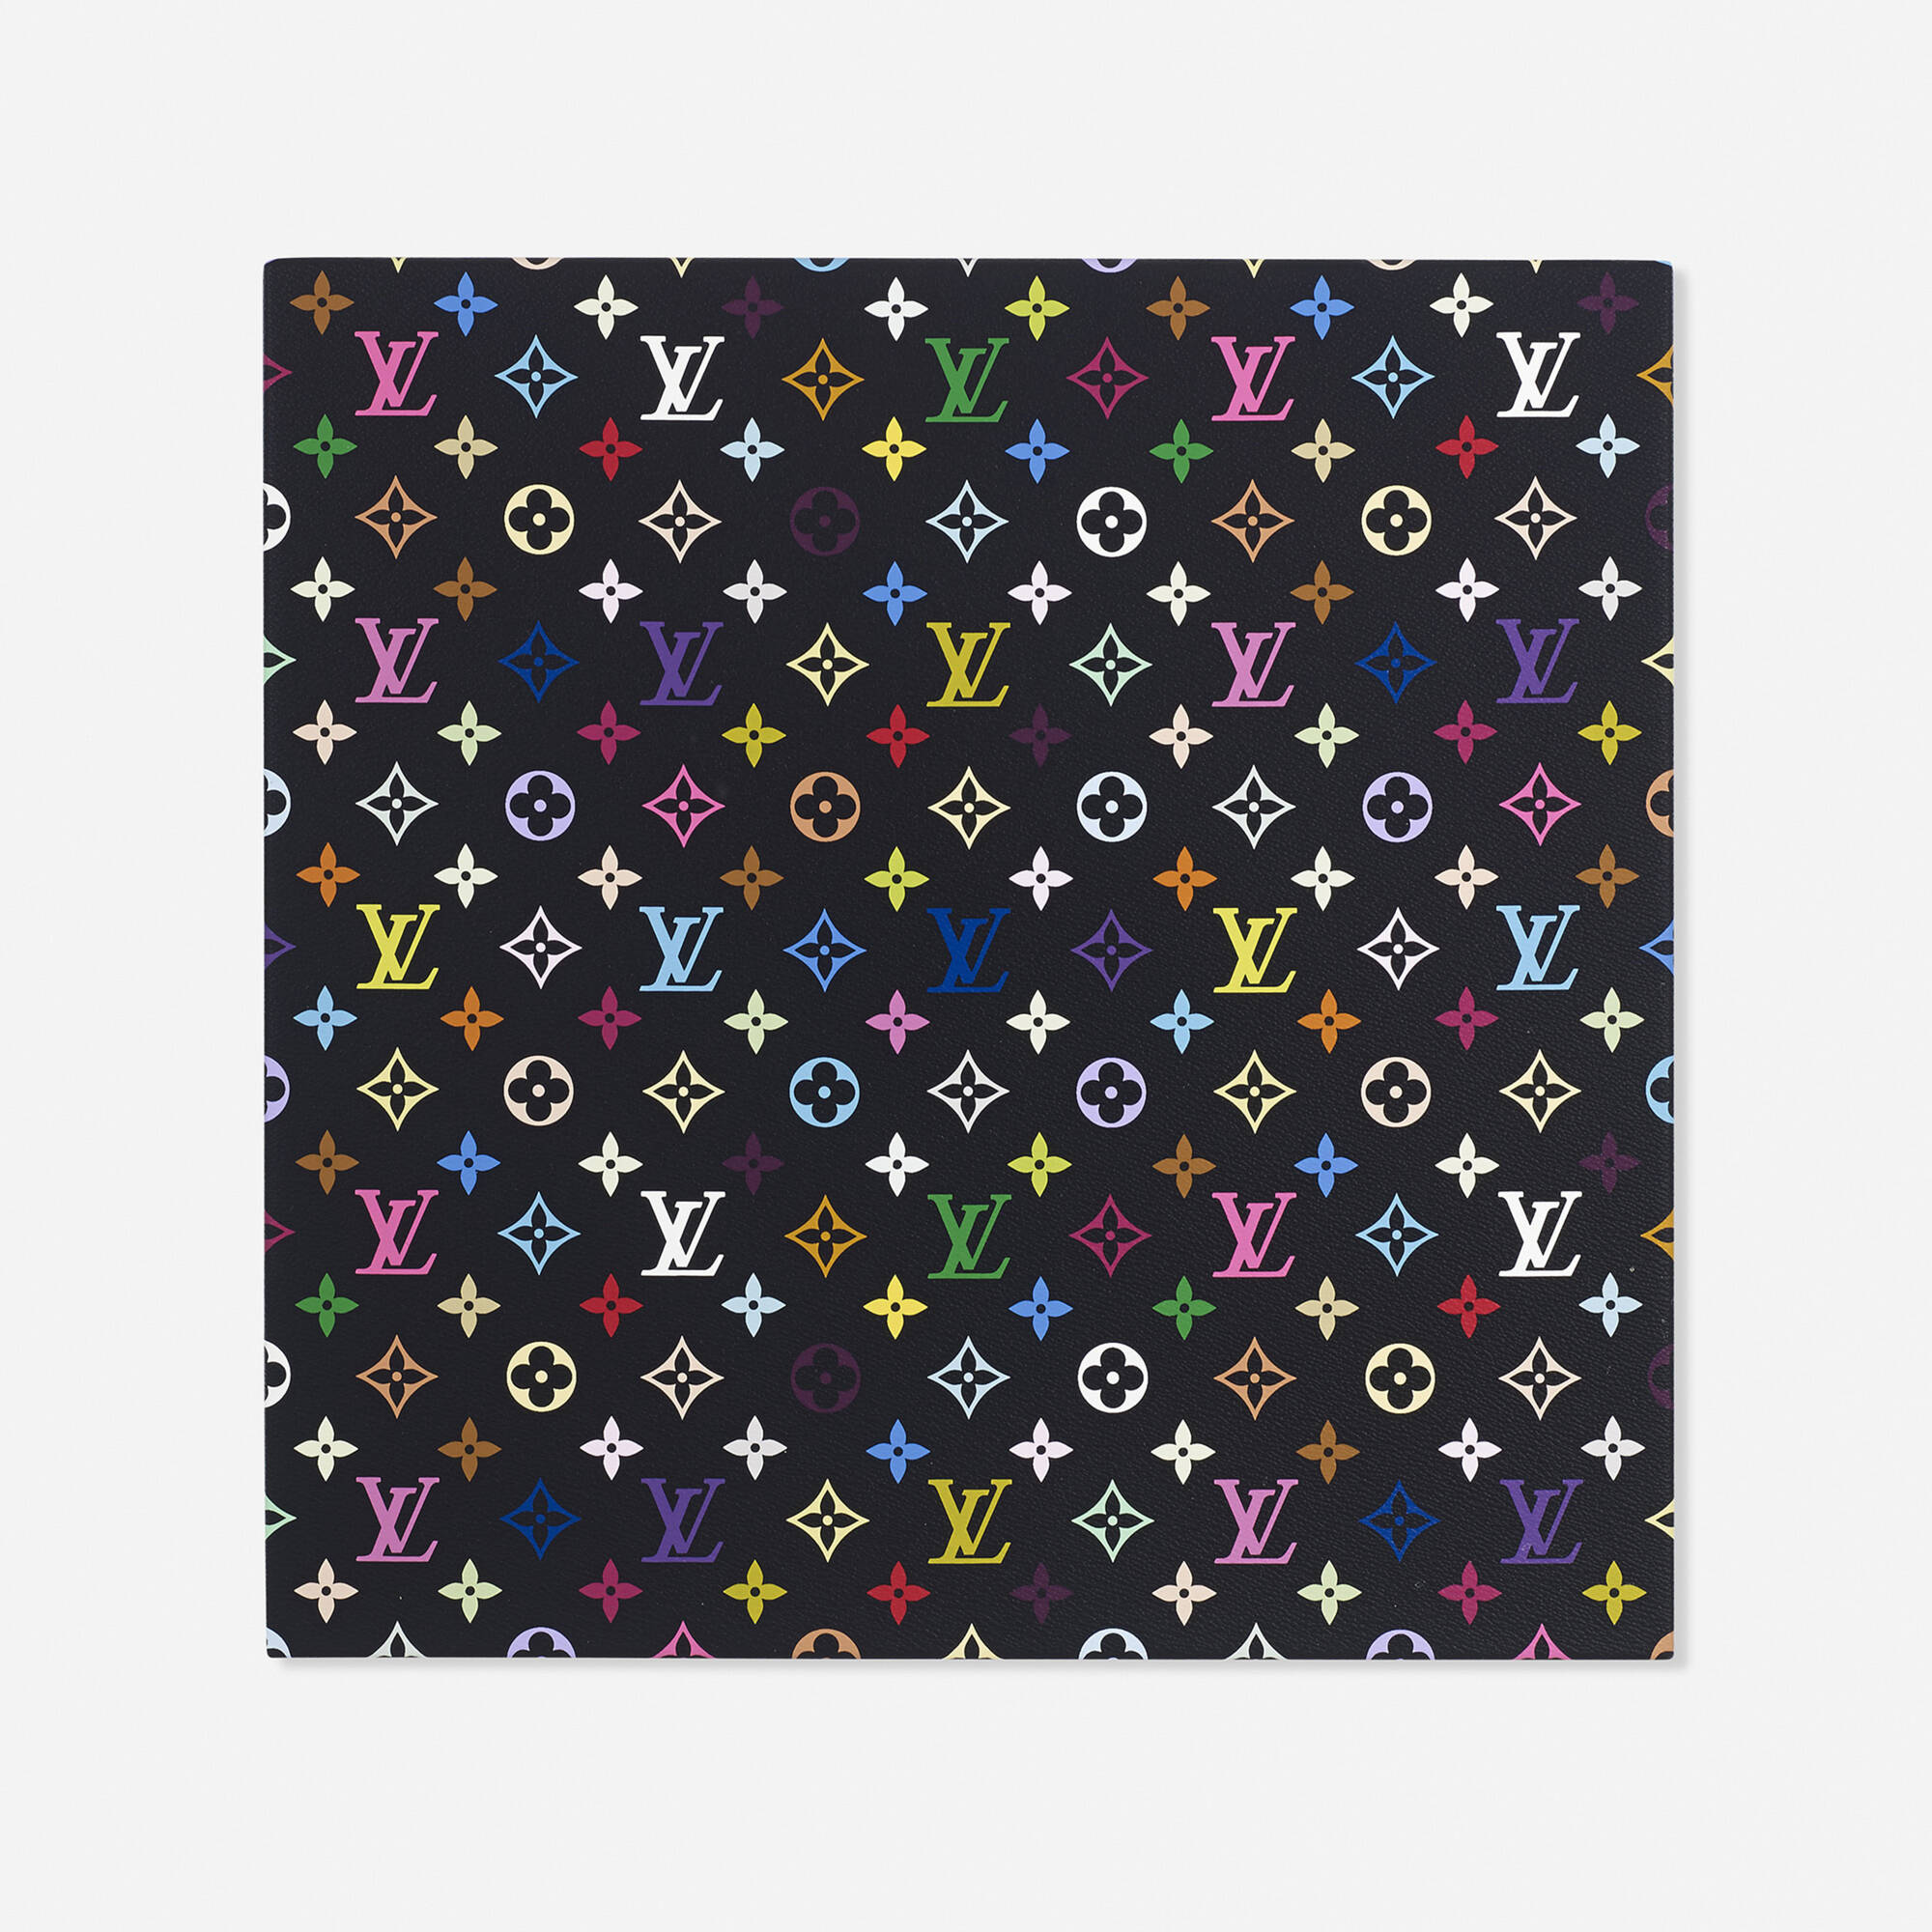 177: TAKASHI MURAKAMI AND LOUIS VUITTON, Monogram Multicolore - black <  Design, 12 June 2014 < Auctions